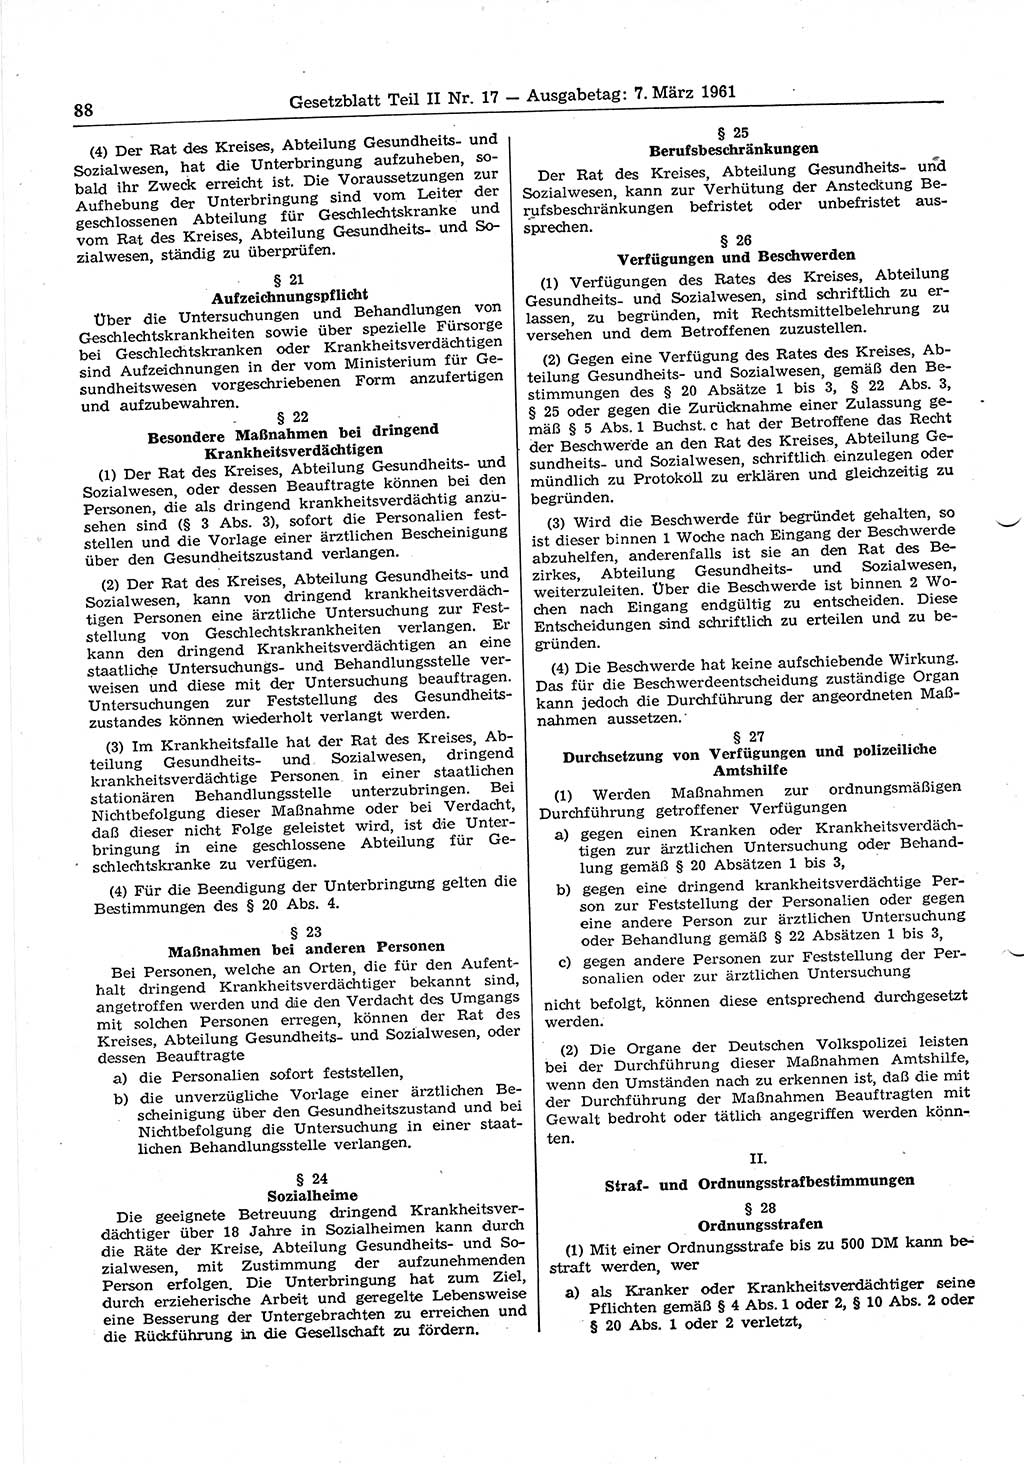 Gesetzblatt (GBl.) der Deutschen Demokratischen Republik (DDR) Teil ⅠⅠ 1961, Seite 88 (GBl. DDR ⅠⅠ 1961, S. 88)